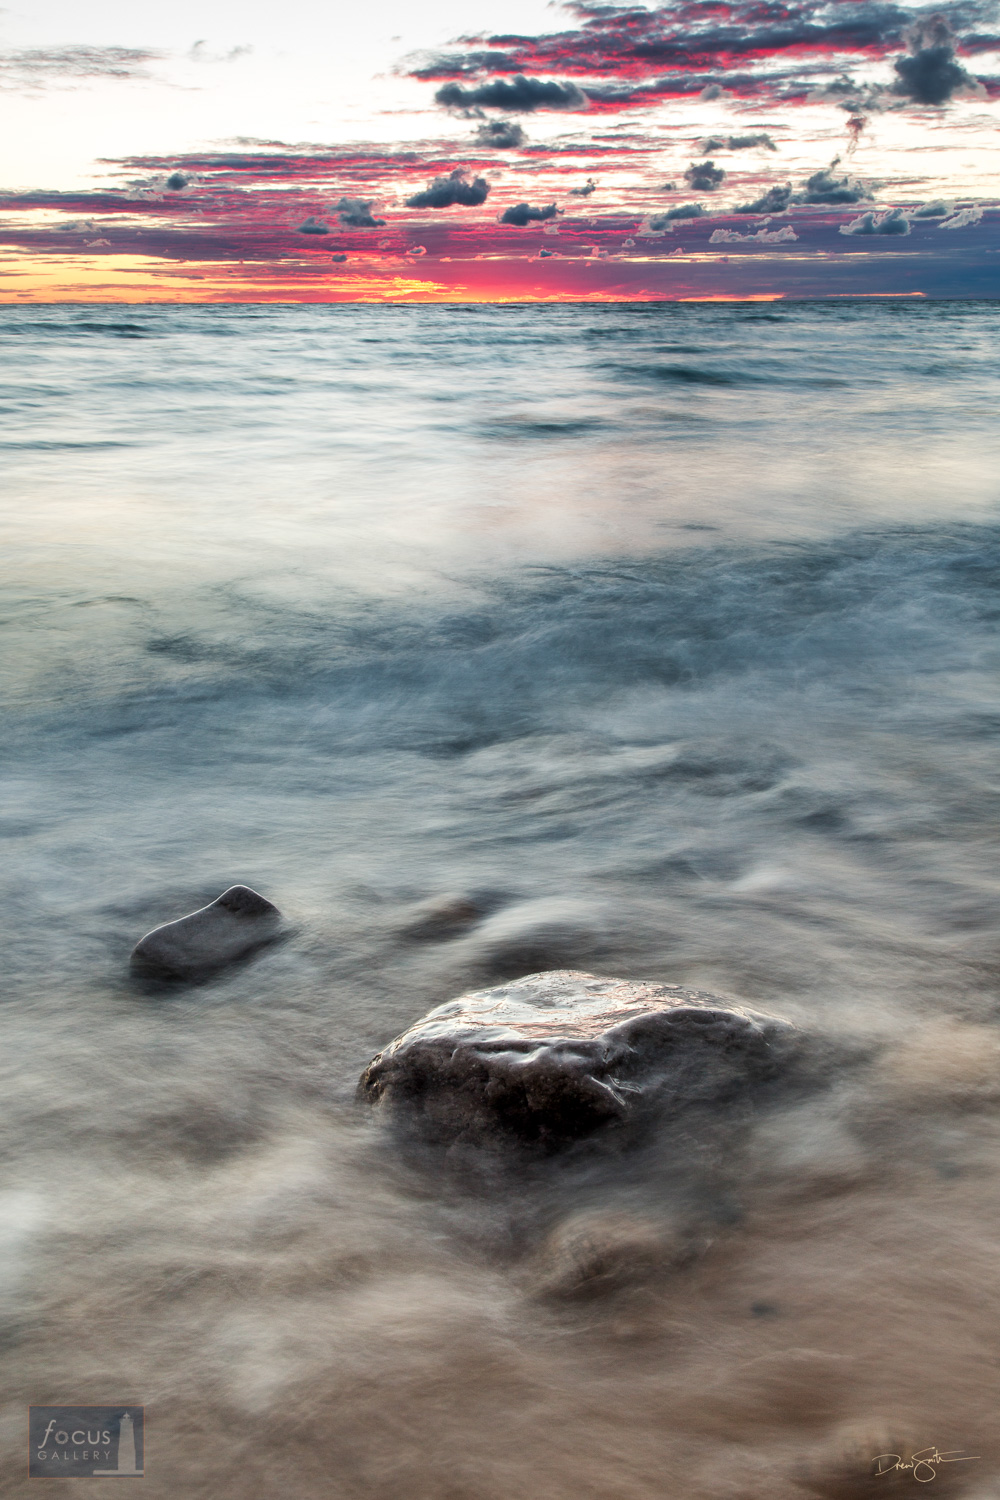 Lake Michigan waters and boulder at sunset.